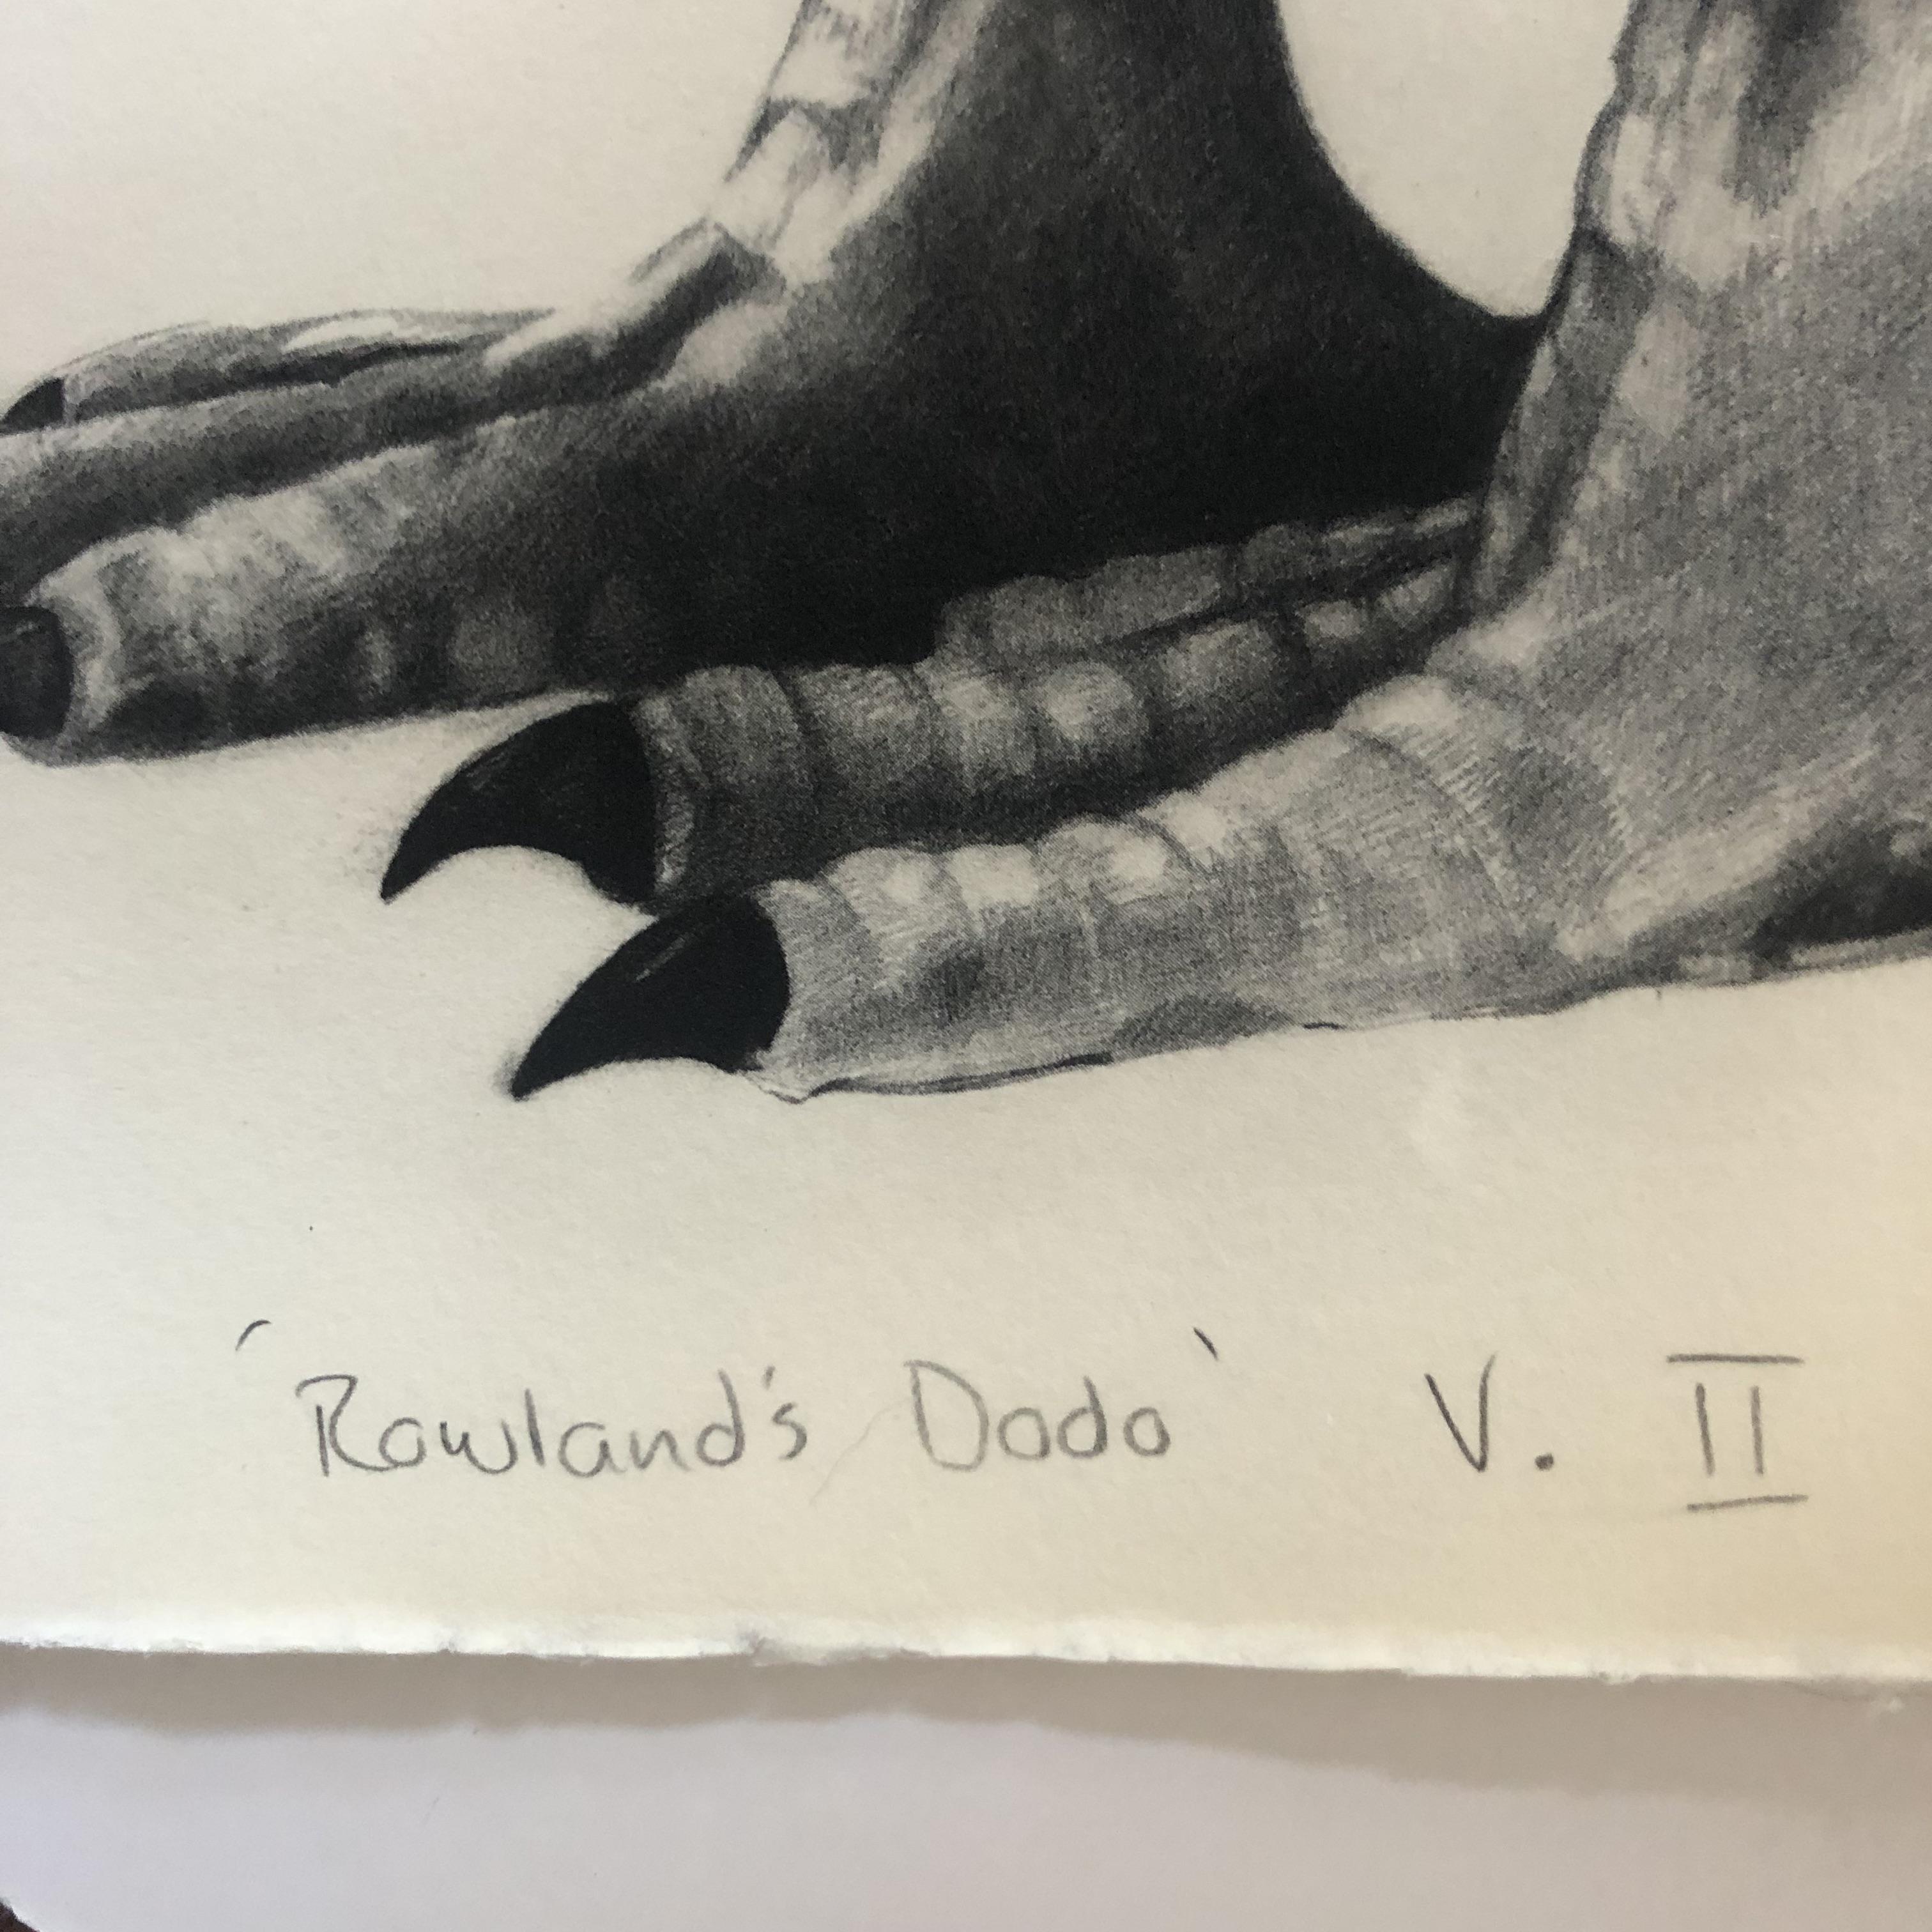 Rowland's Dodo (Version II) ist ein Photopolymerdruck in limitierter Auflage auf weichem weißen Somerset-Papier von Tammy Mackay. Der Schwarz-Weiß-Druck ist sehr detailliert und könnte leicht mit einem Original verwechselt werden. 

ZUSÄTZLICHE